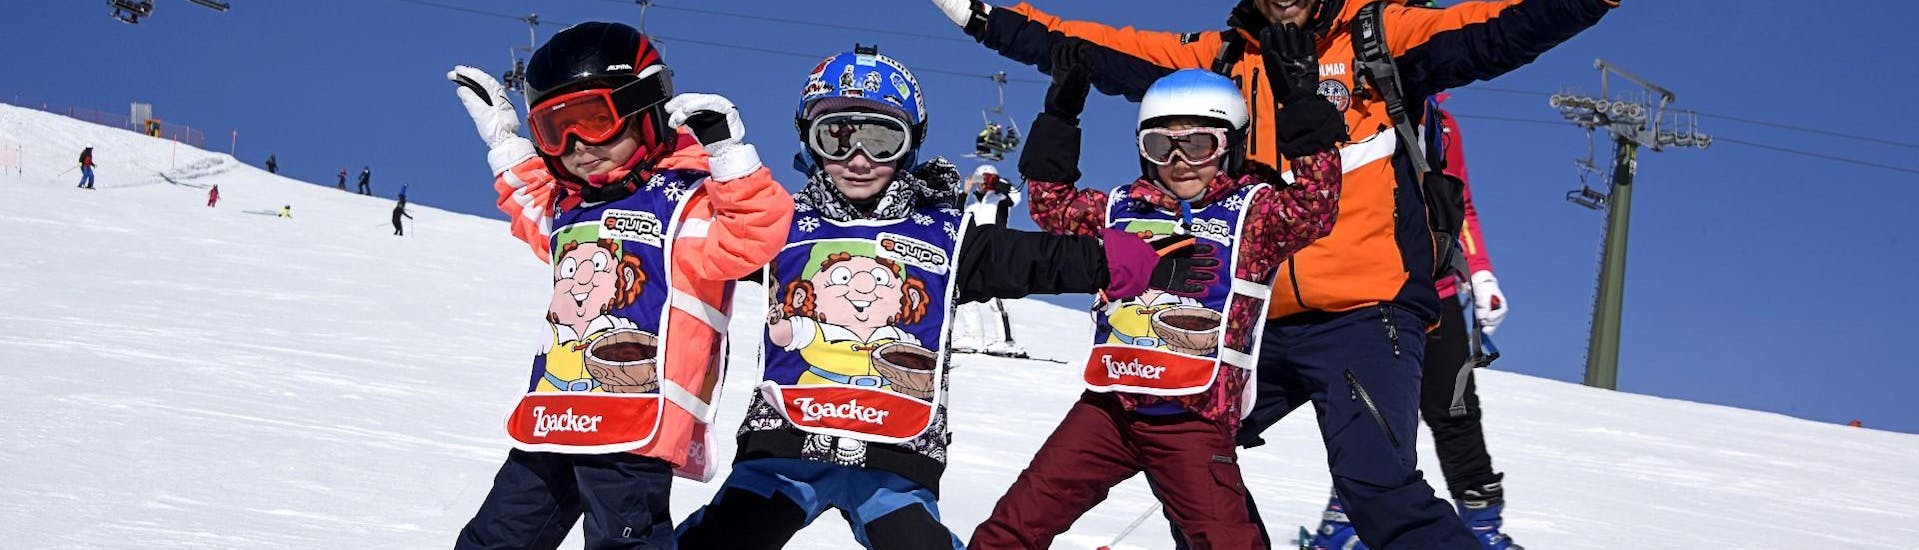 Bambini e maestro di sci si fanno una foto sulle piste di Facade durante una delle Lezioni di sci per bambini "Mini Gruppo" (4-12 anni).